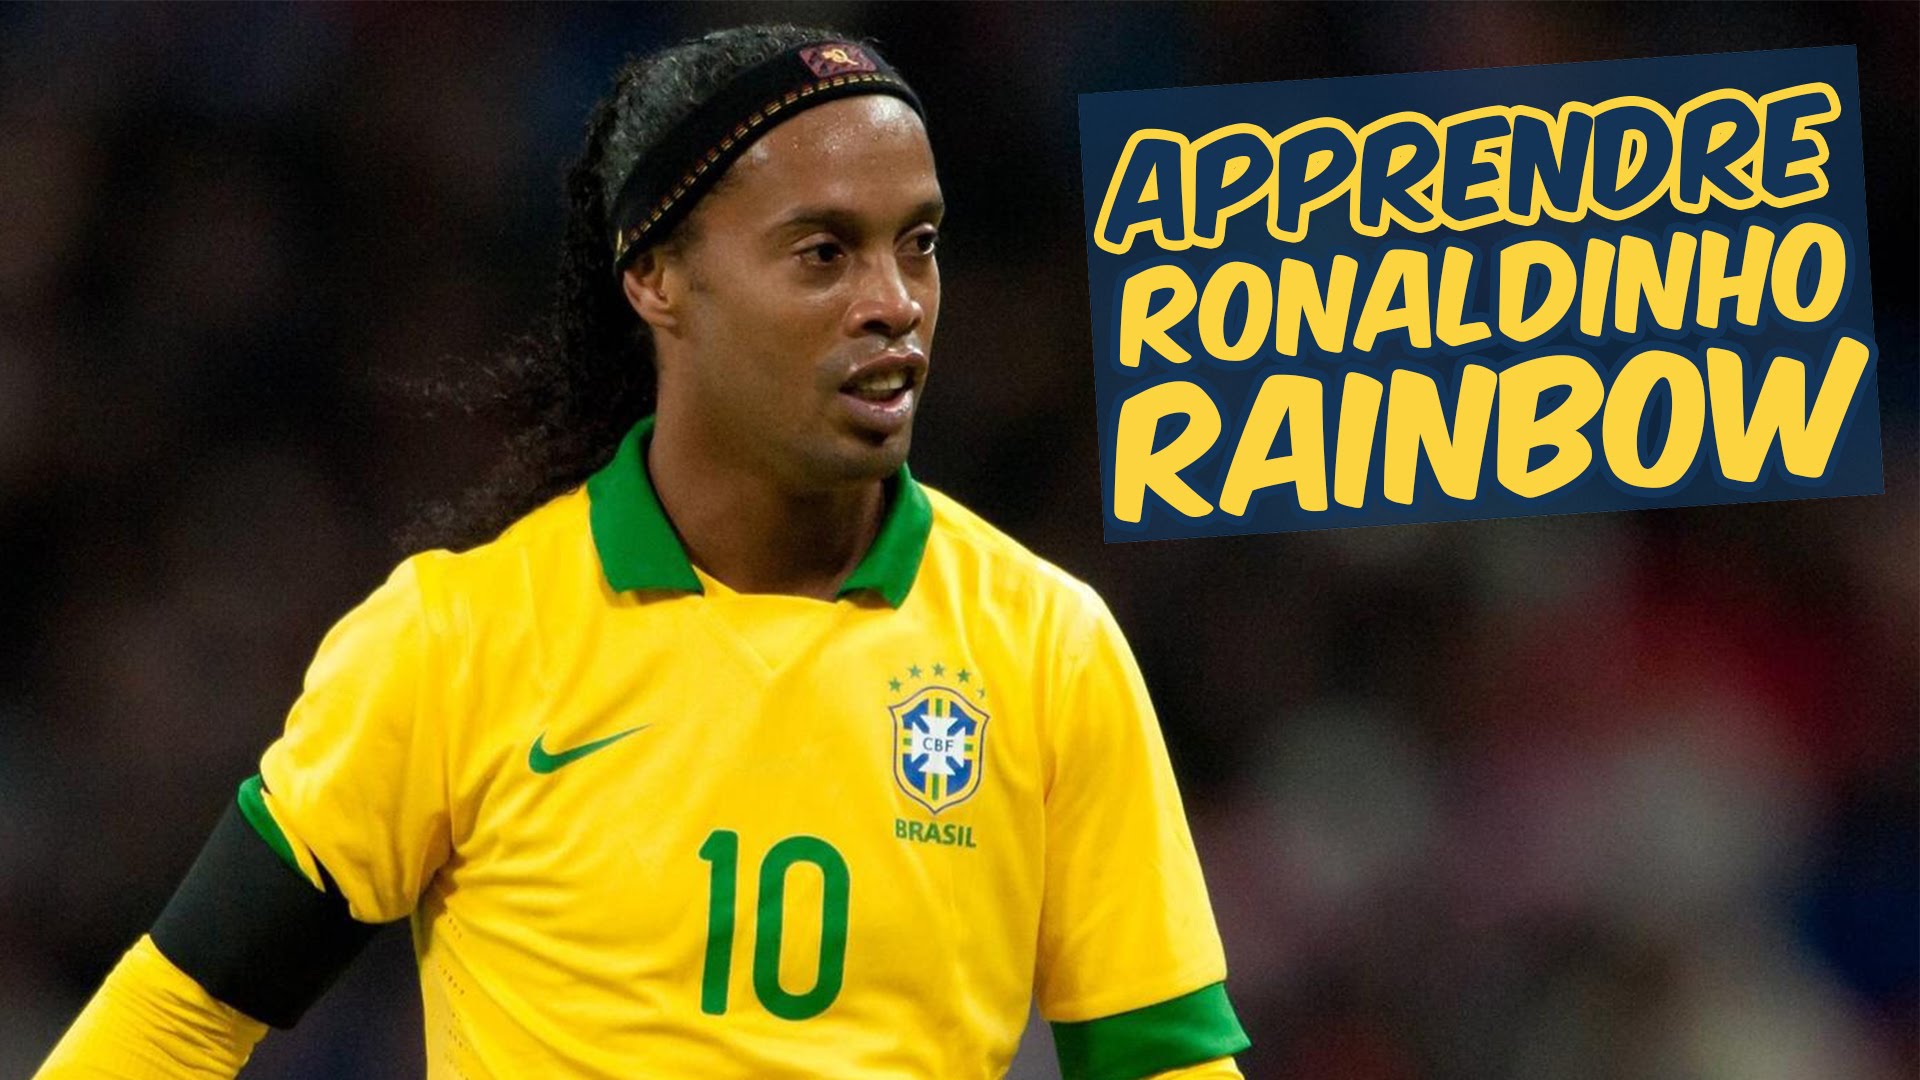 Ronaldinho rainbow